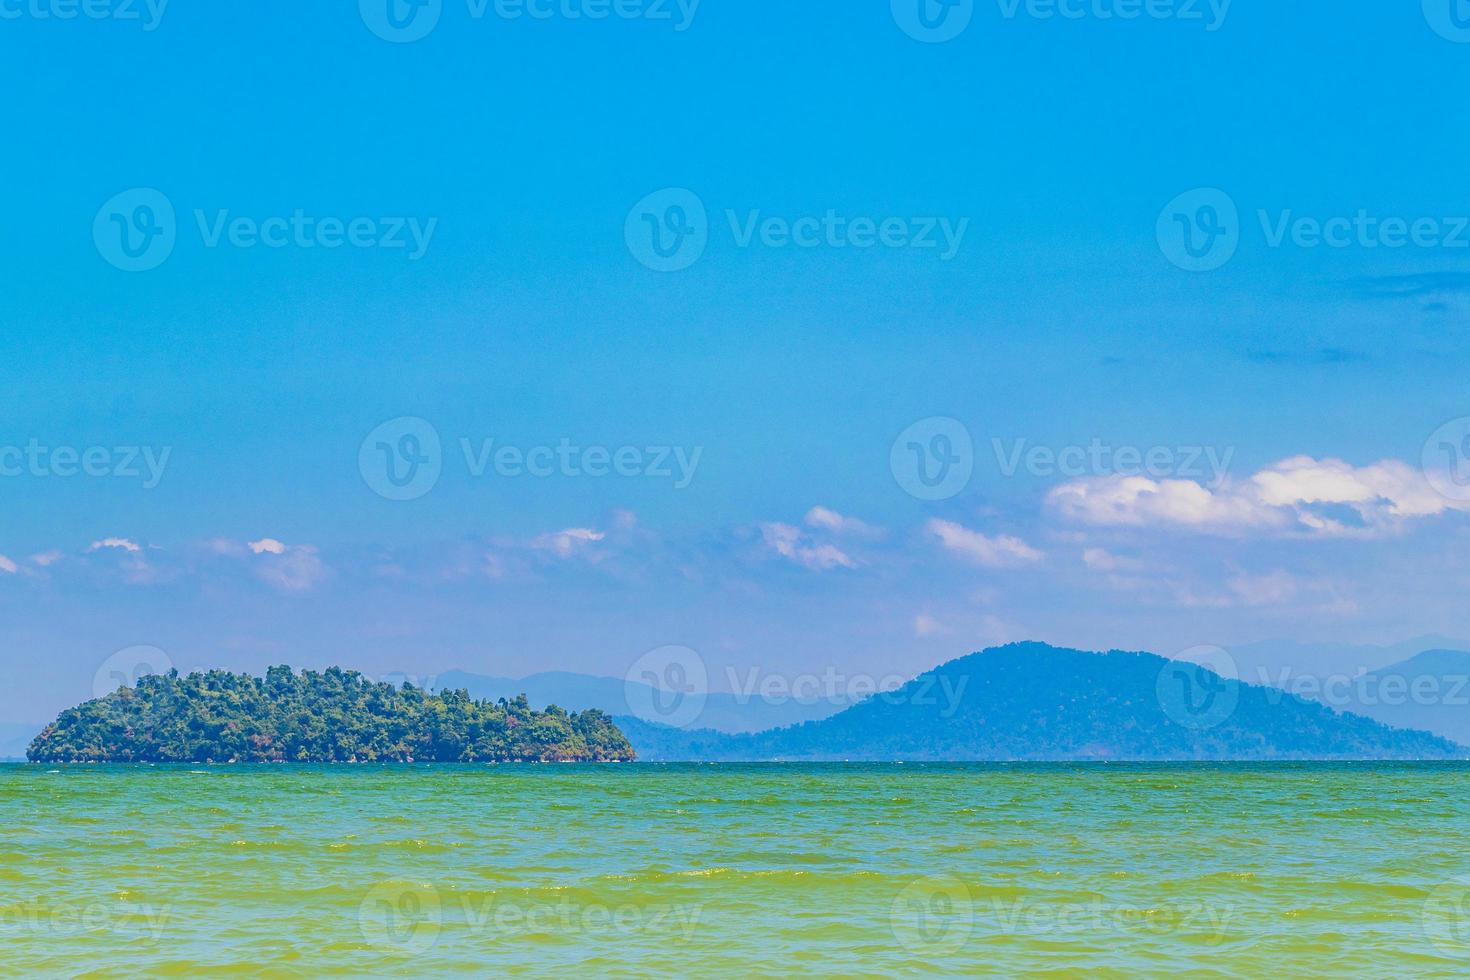 île paradisiaque tropicale panorama de koh phayam et vue sur ko thalu et ranong en thaïlande photo